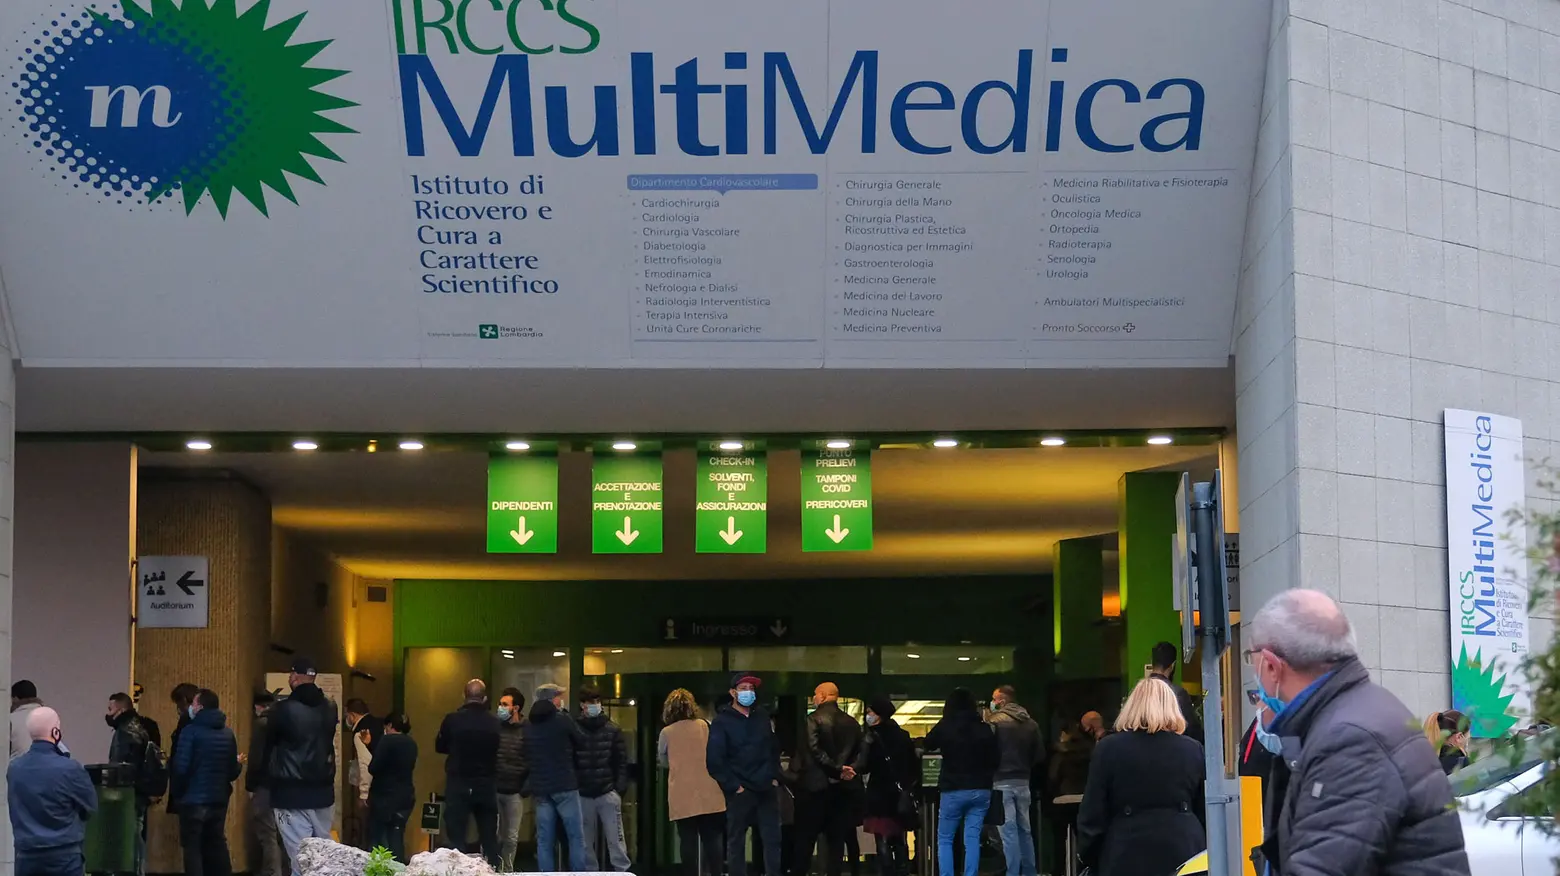 L'Irccs Multimedica di Sesto San Giovanni (Milano)